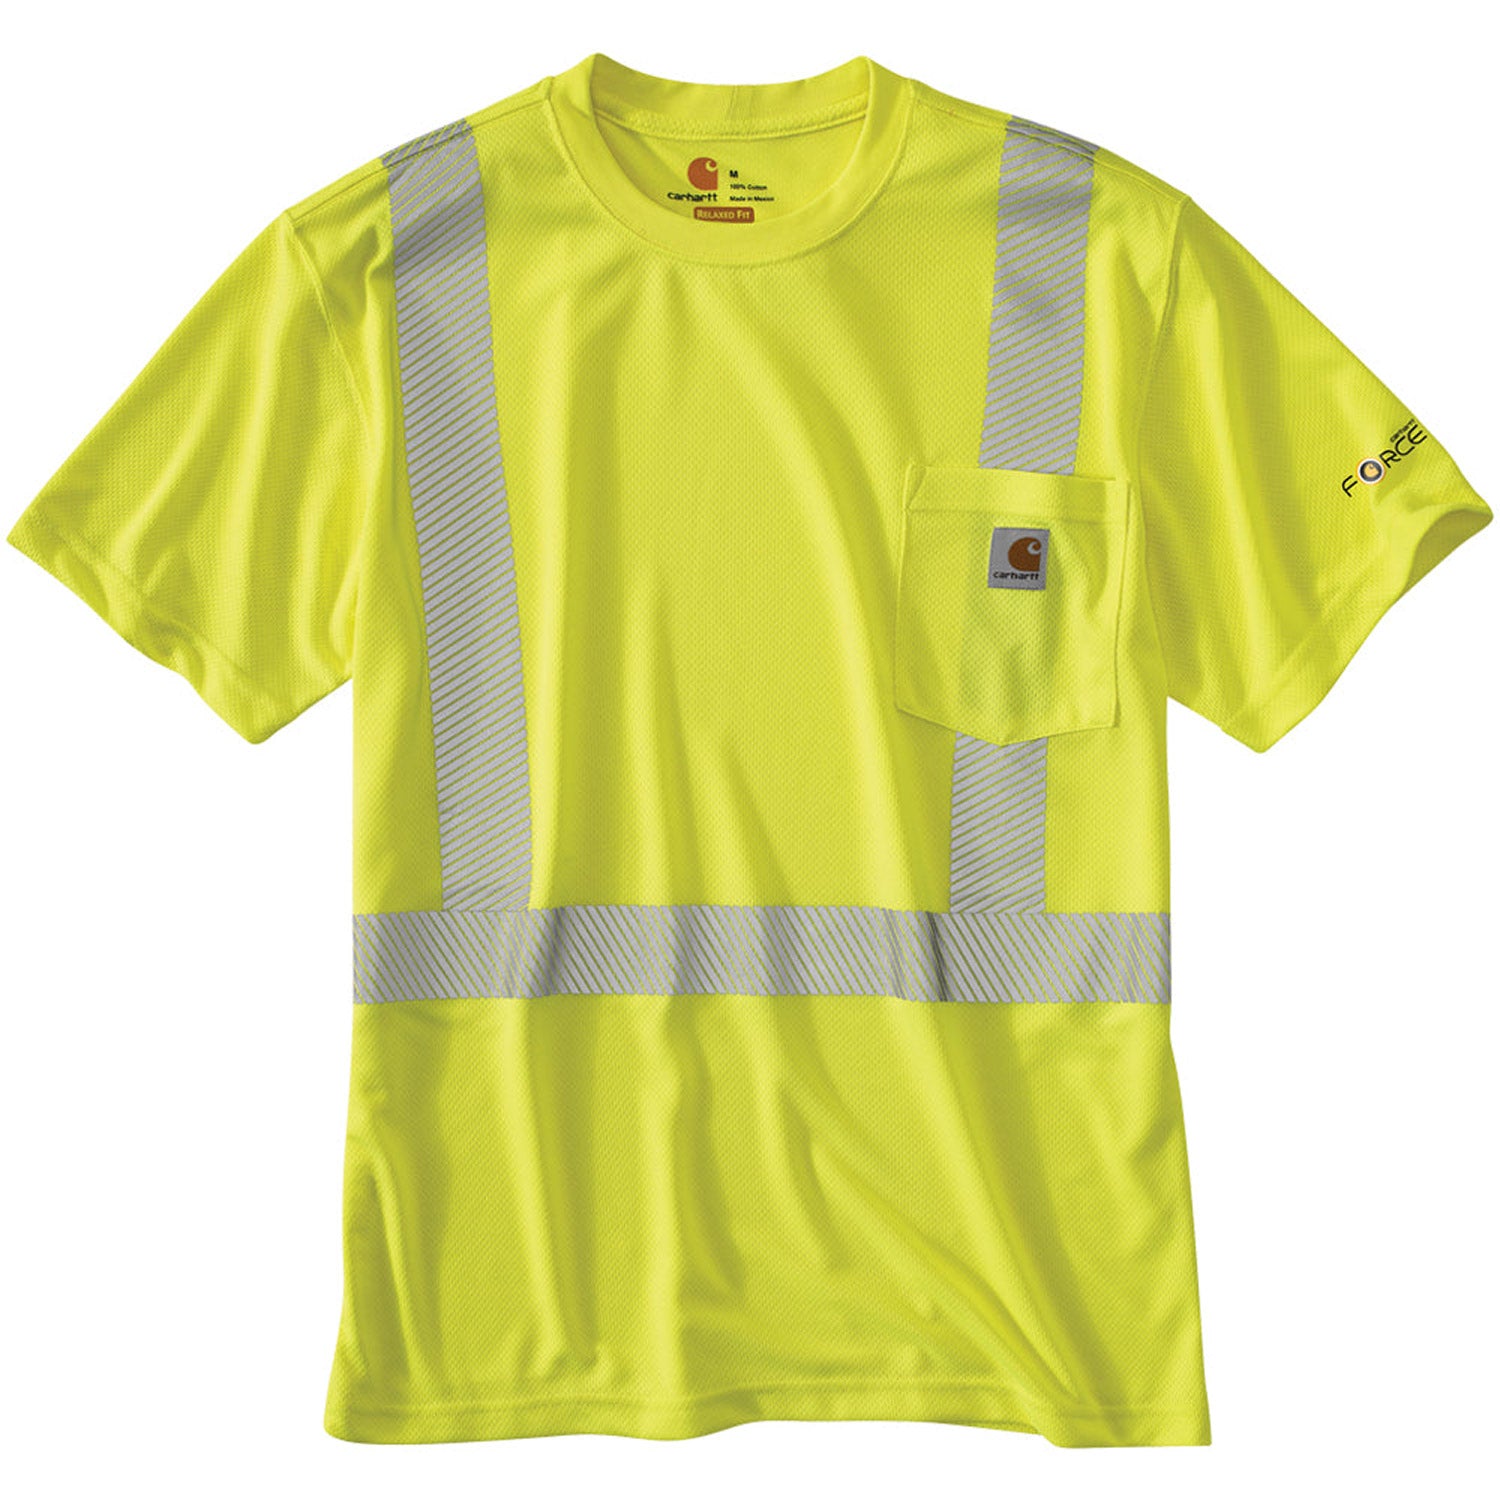 Carhartt Men's Force Class 2 Hi-Vis Short Sleeve T-Shirt - Work World - Workwear, Work Boots, Safety Gear